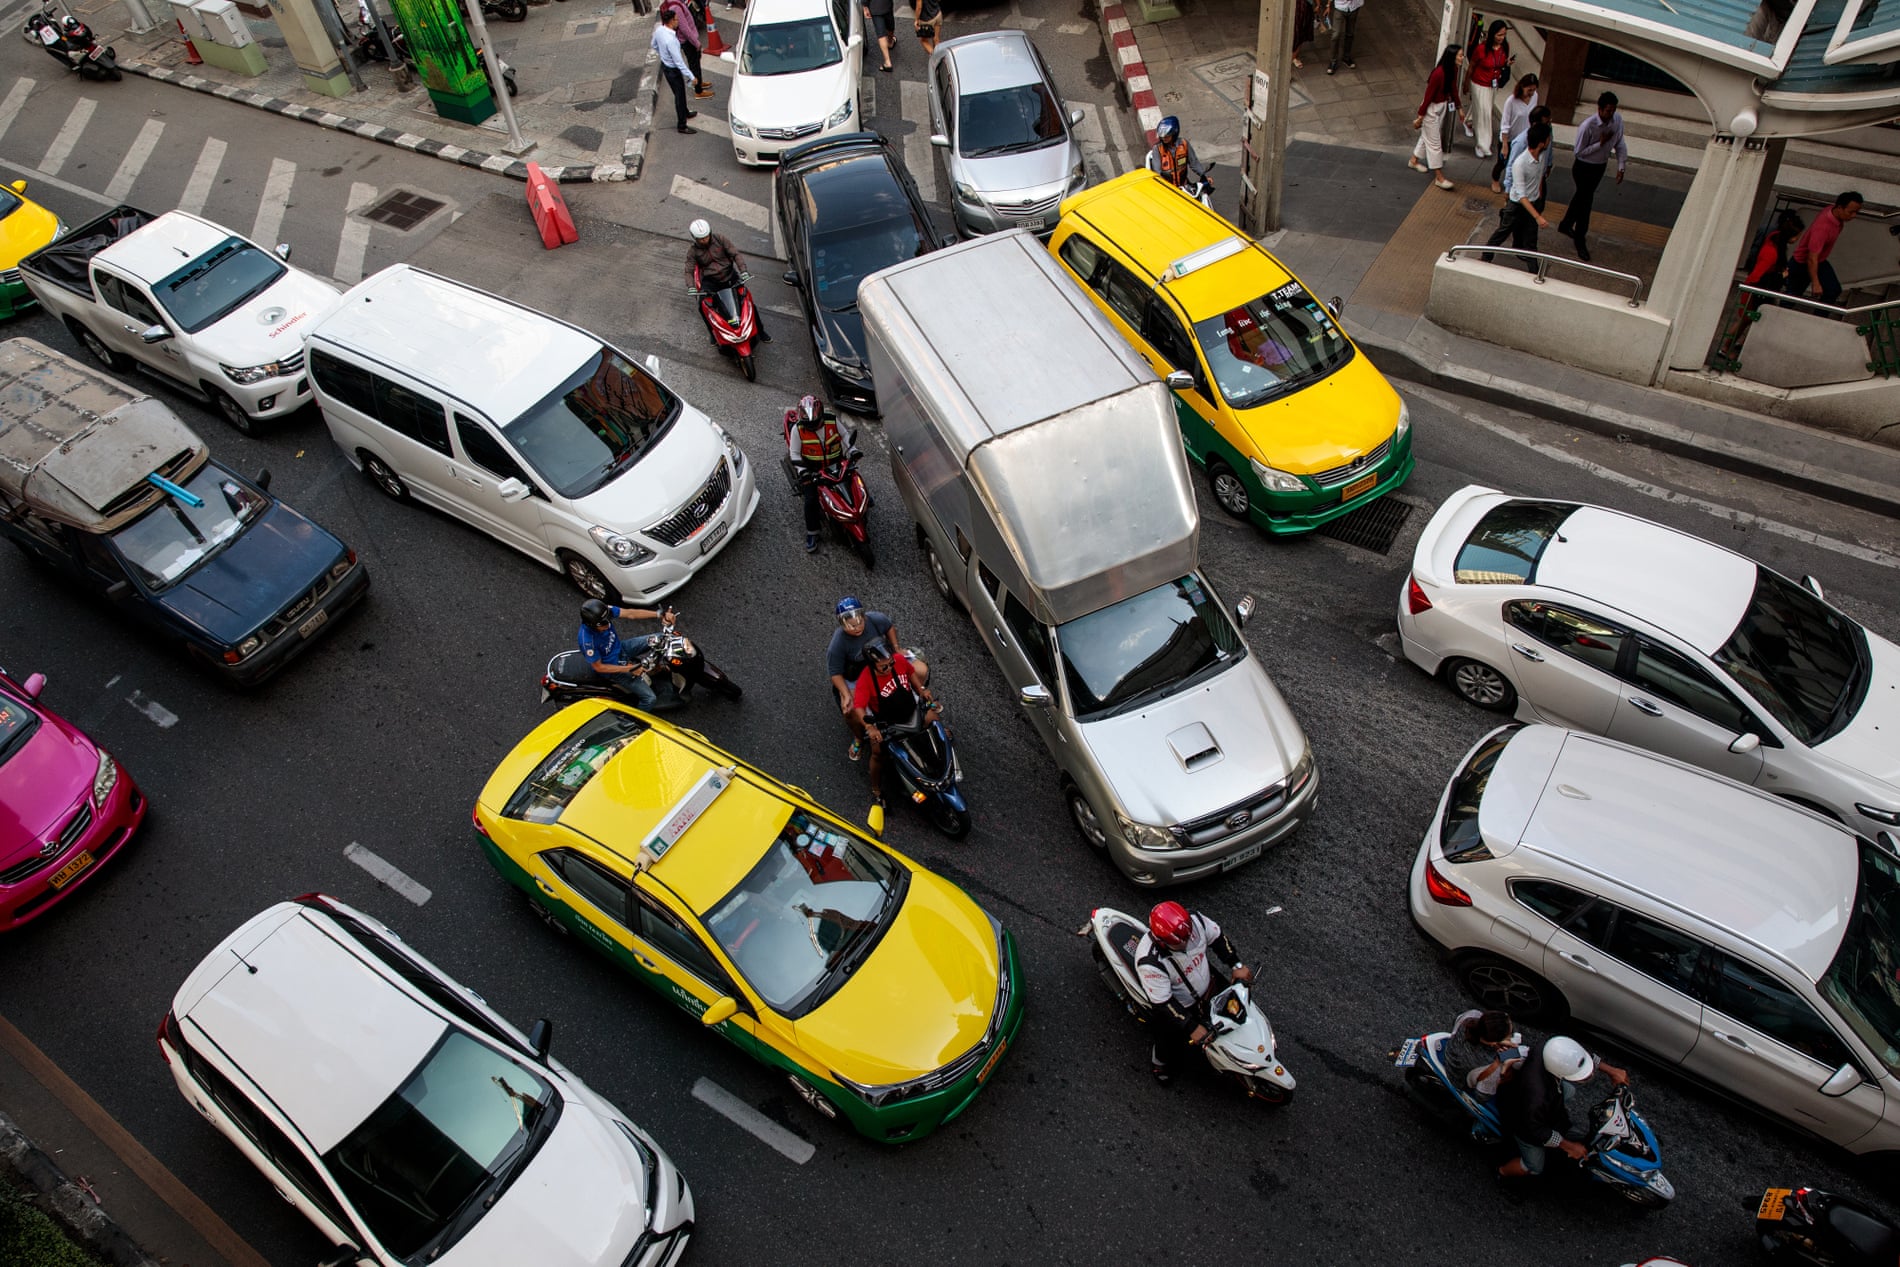  Motorbikes snake through traffic during rush hour on in Bangkok.